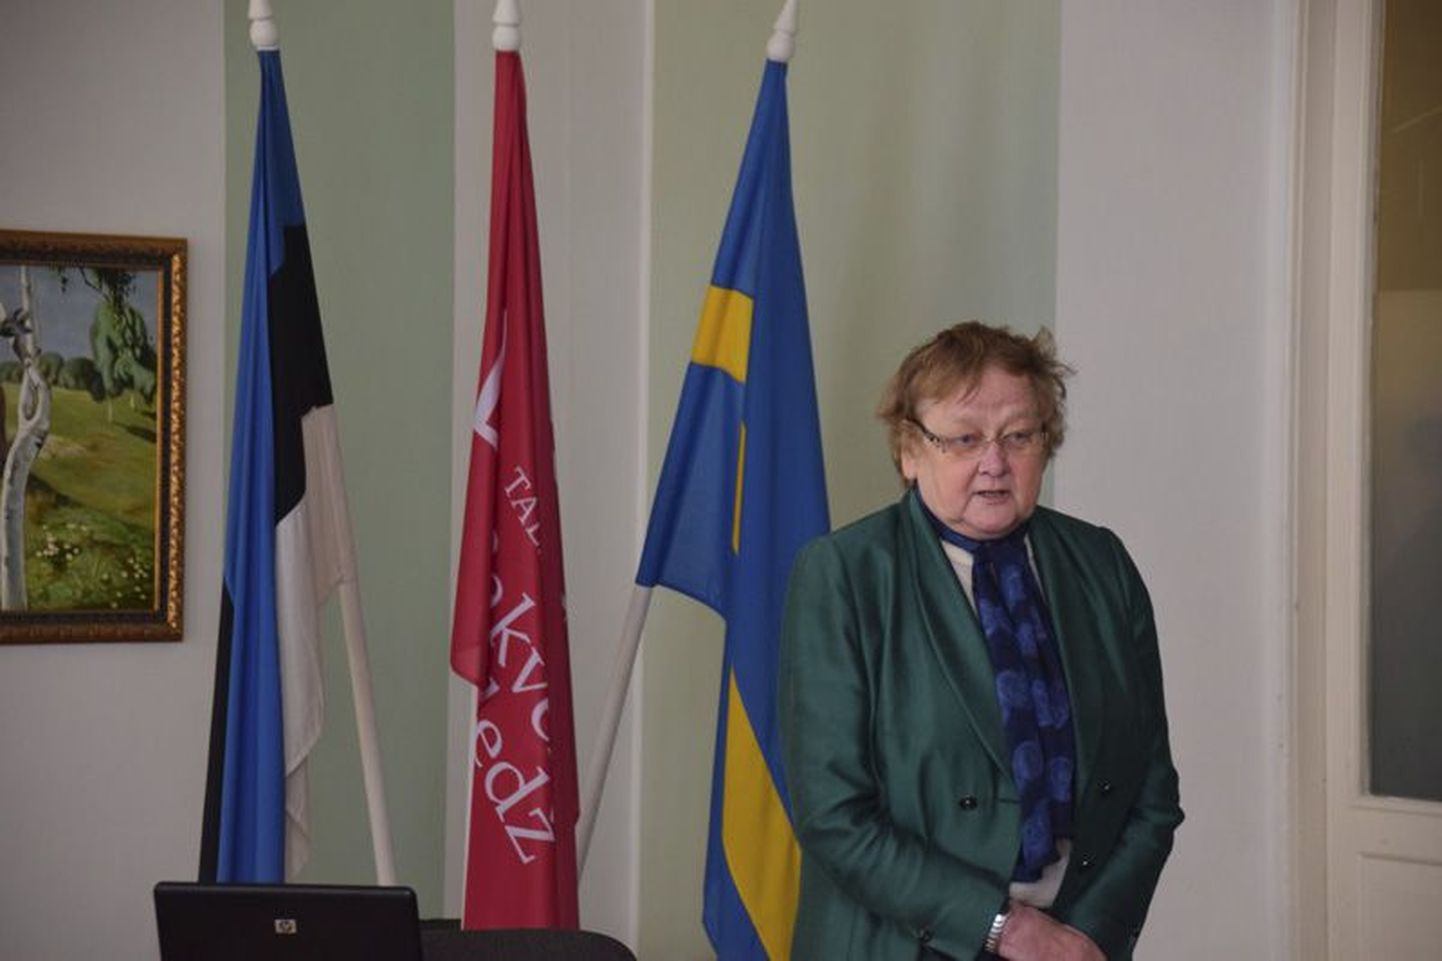 Möödunud nädalal pidas Tallinna ülikooli Rakvere kolledžis Hõbe­akadeemias loengu astrofüüsik ja poliitik Ene Ergma.